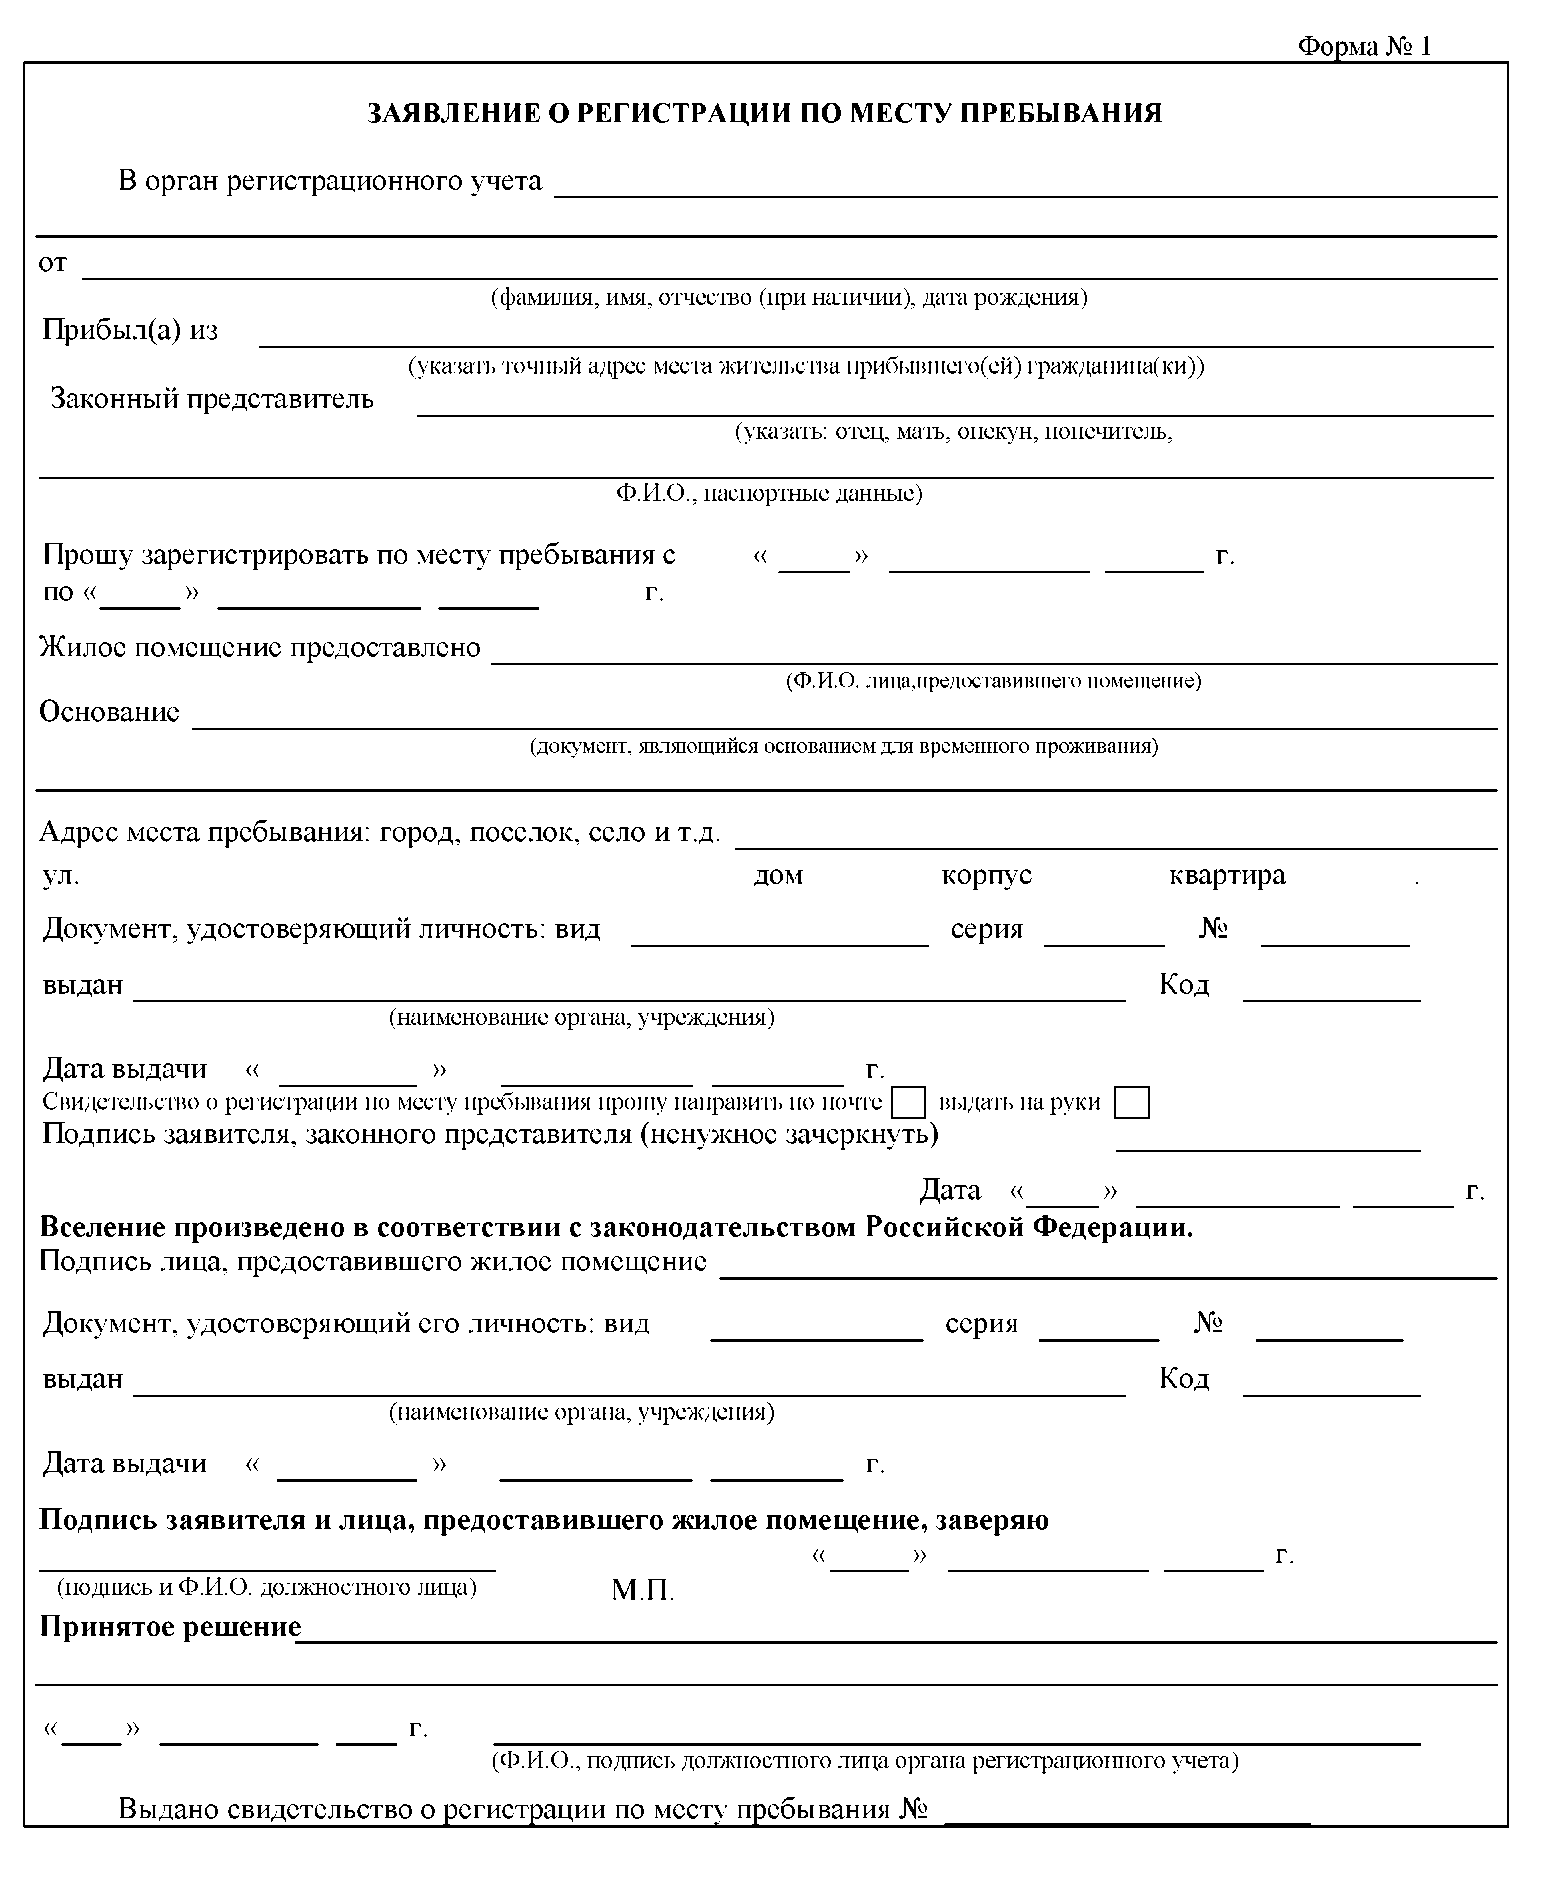 Все заявления на регистрацию по месту пребывания и жительства (бланки и образцы)